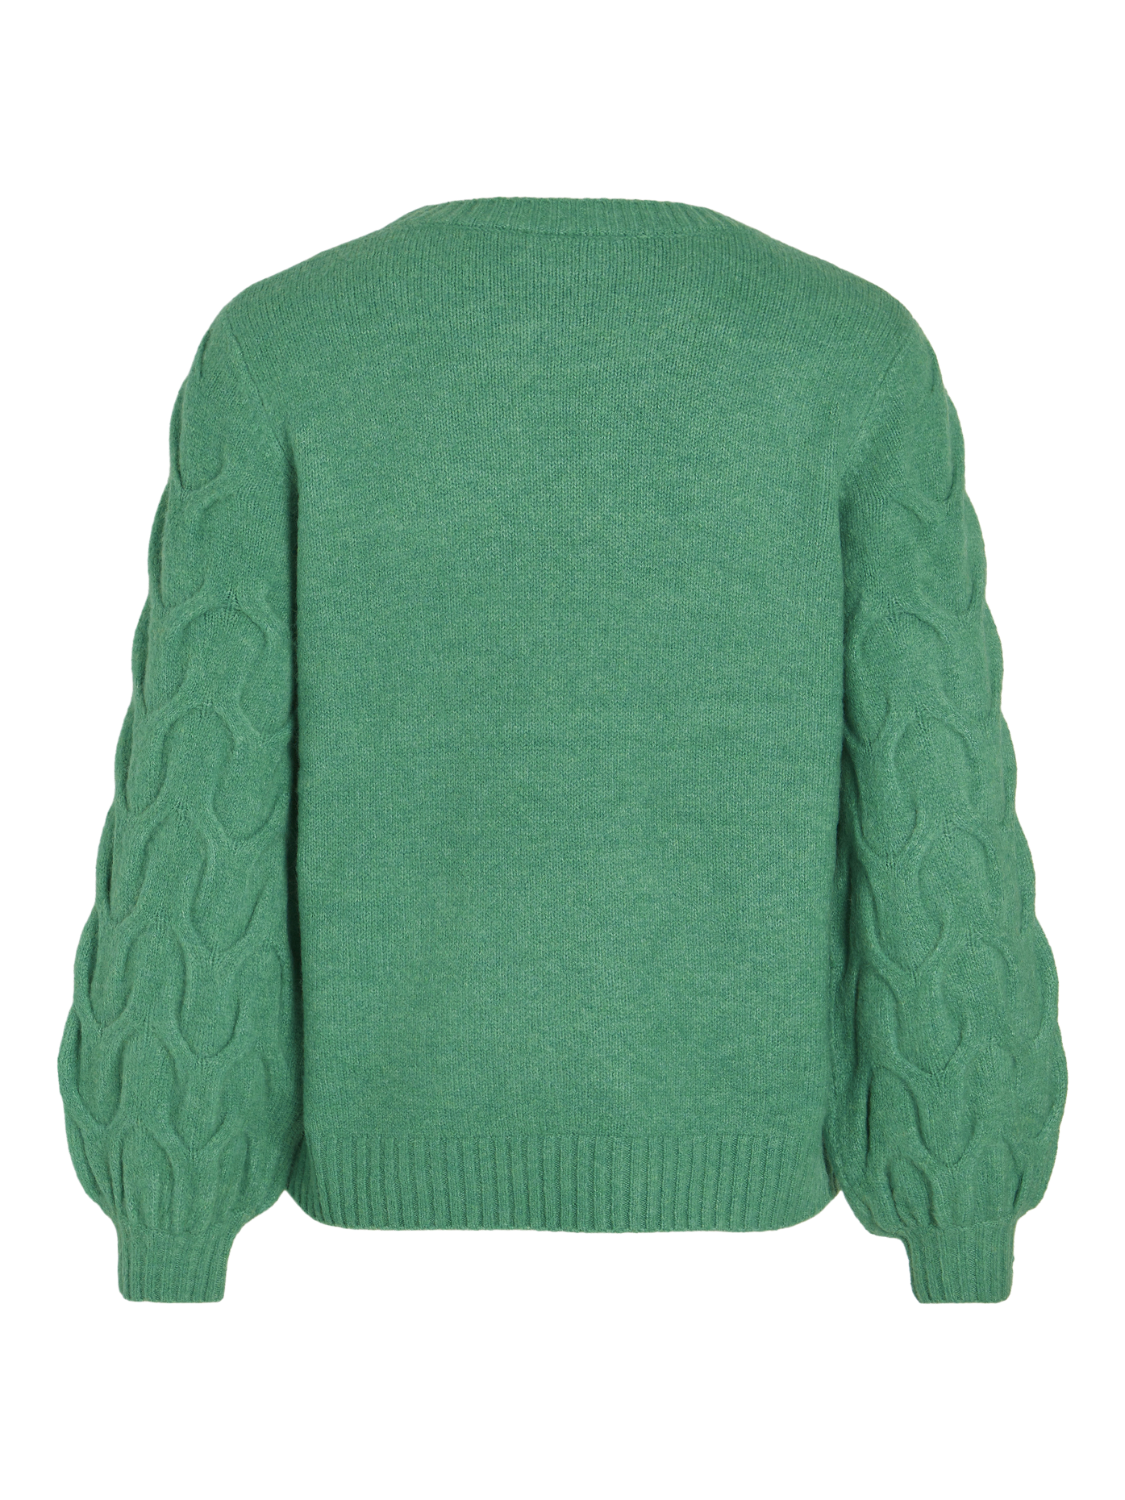 VIELLA Pullover - Bright Green